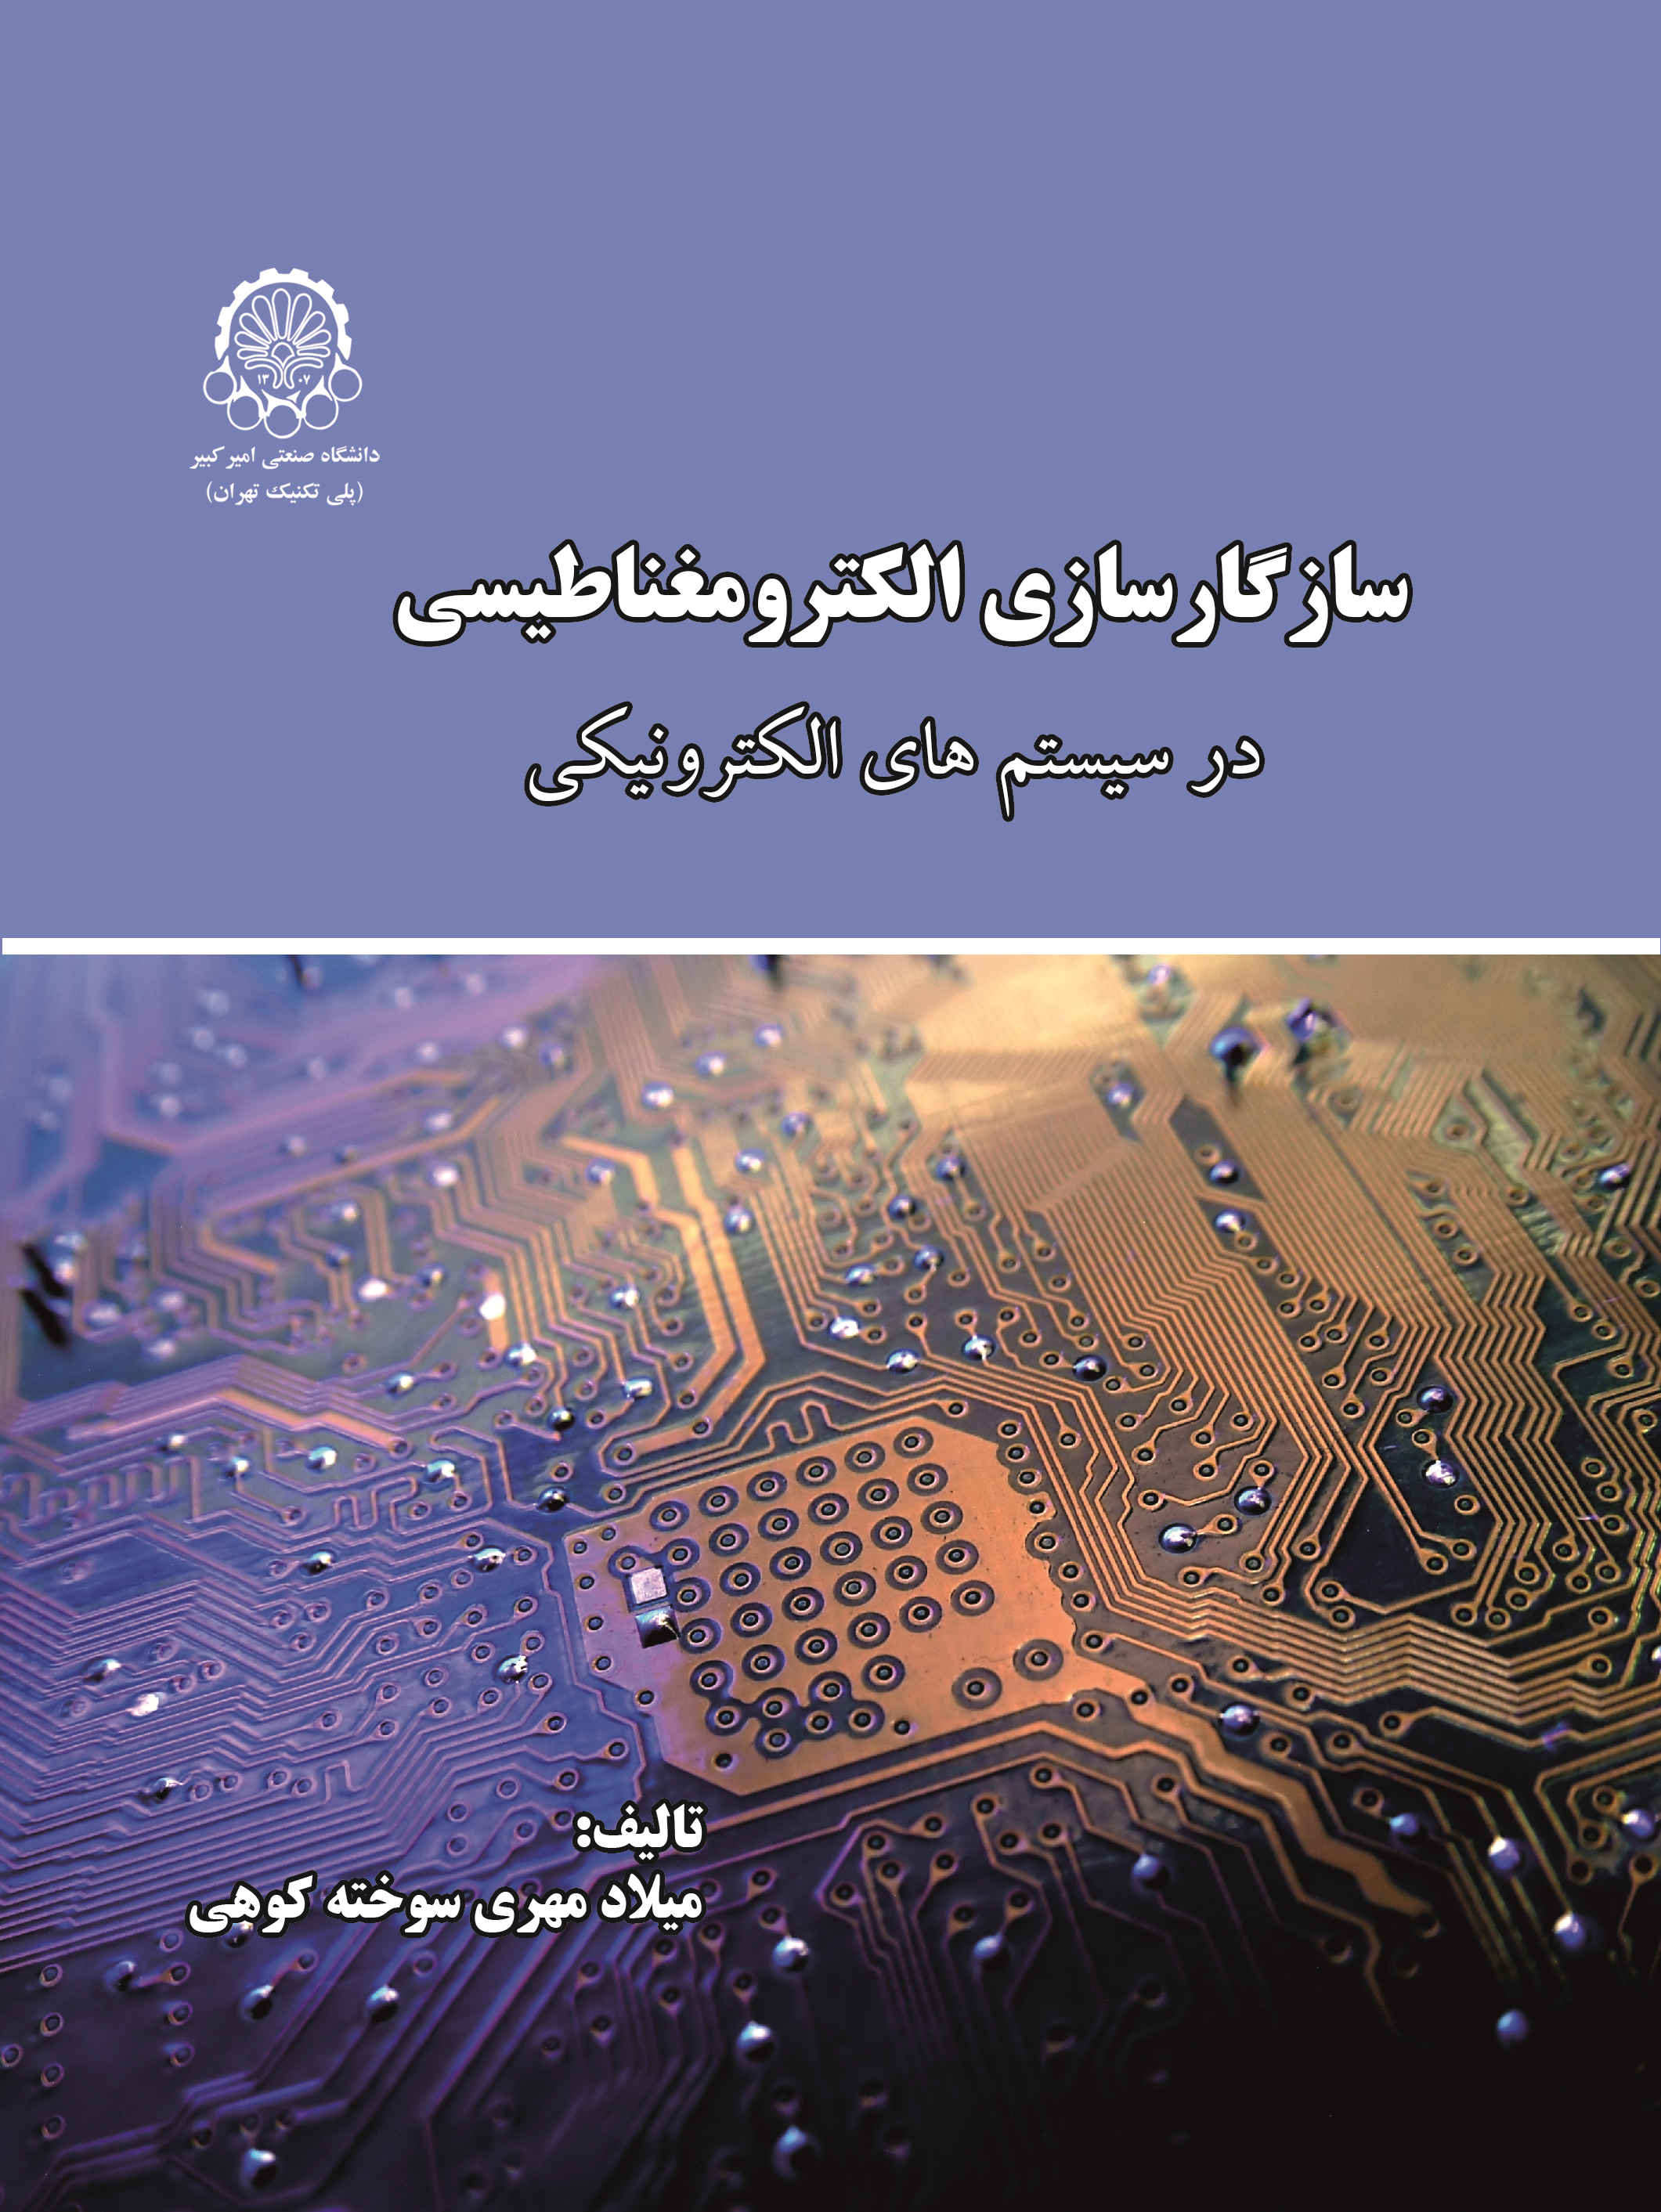  کتاب سازگارسازی الکترومغناطیسی در سیستم های الکترونیکی